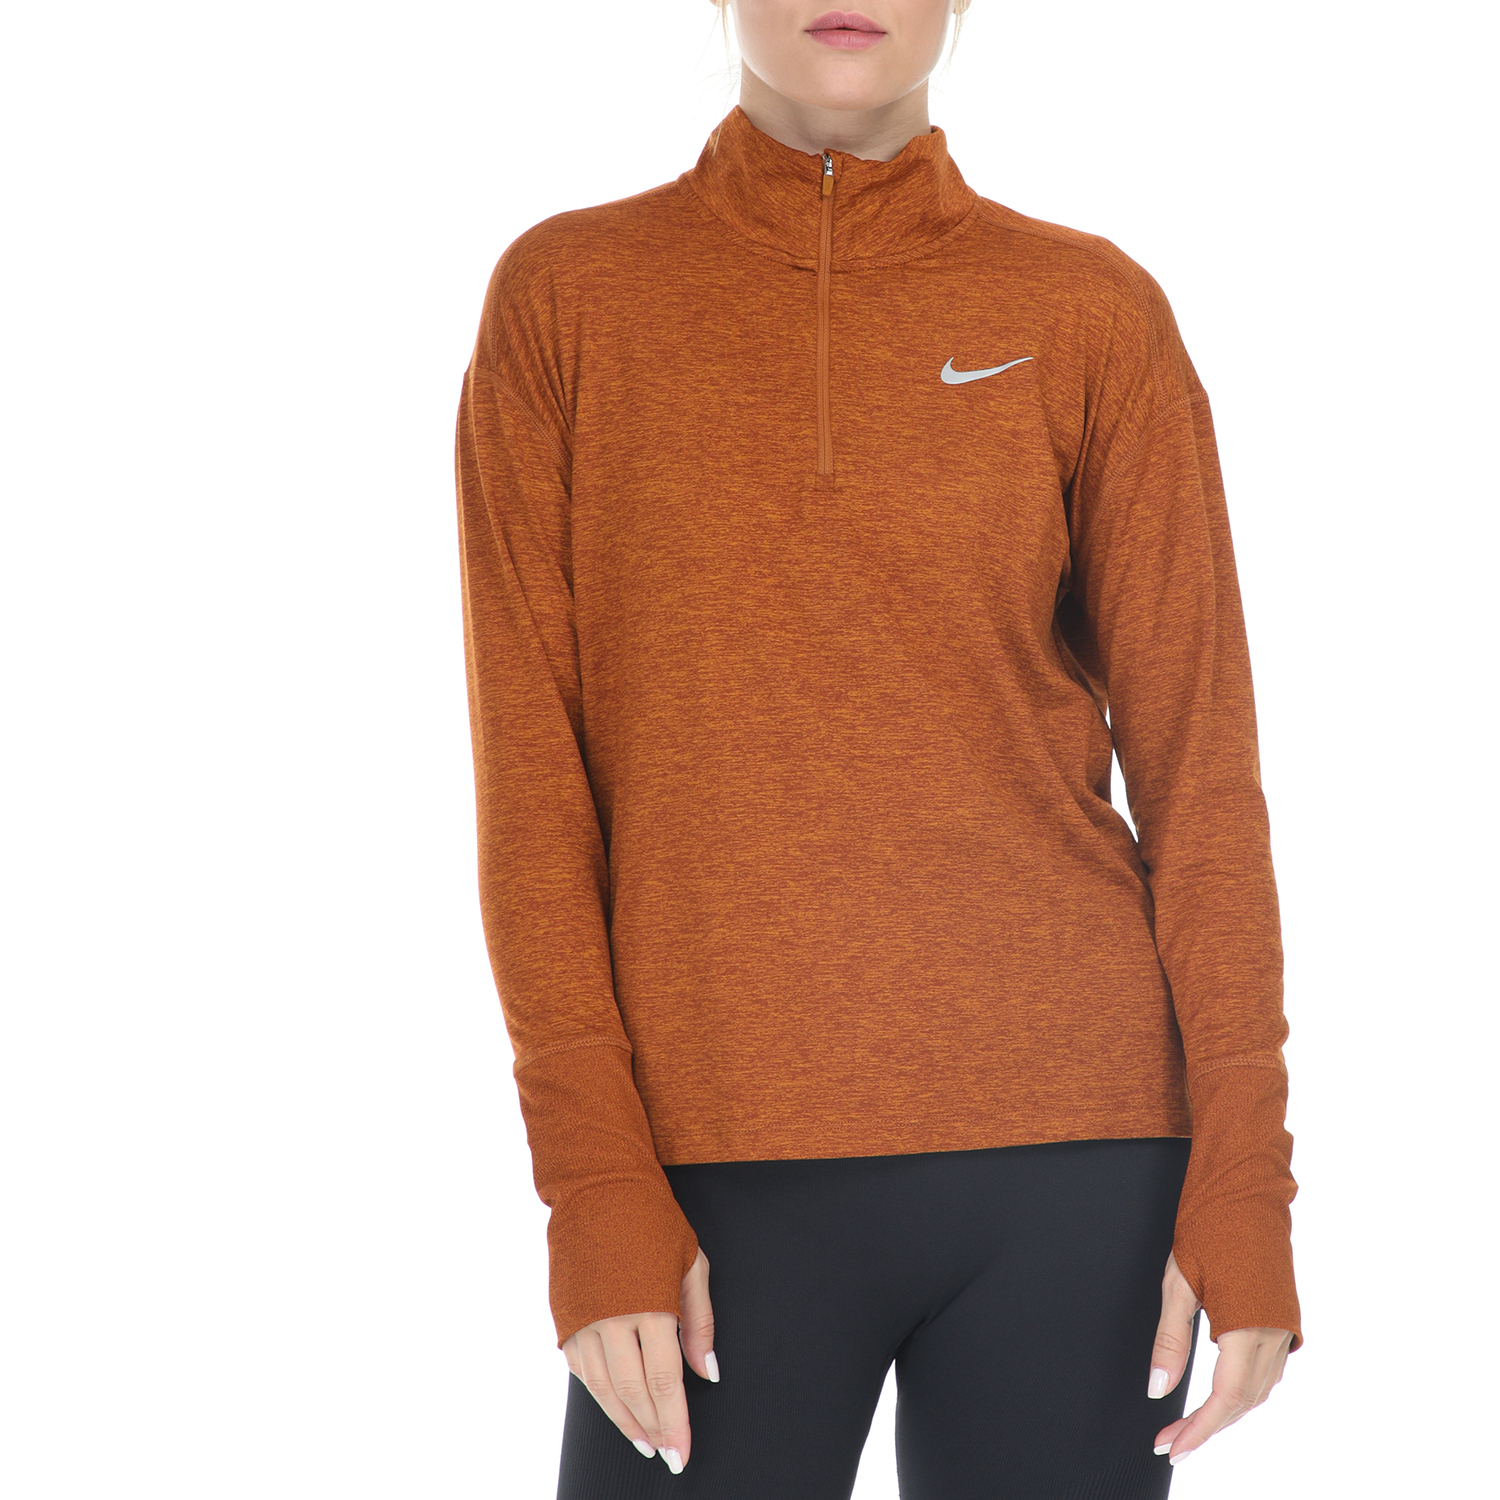 Γυναικεία/Ρούχα/Αθλητικά/Φούτερ-Μακρυμάνικα NIKE - Γυναικεία μπλούζα NIKE ELMNT TOP HZ πορτοκαλί